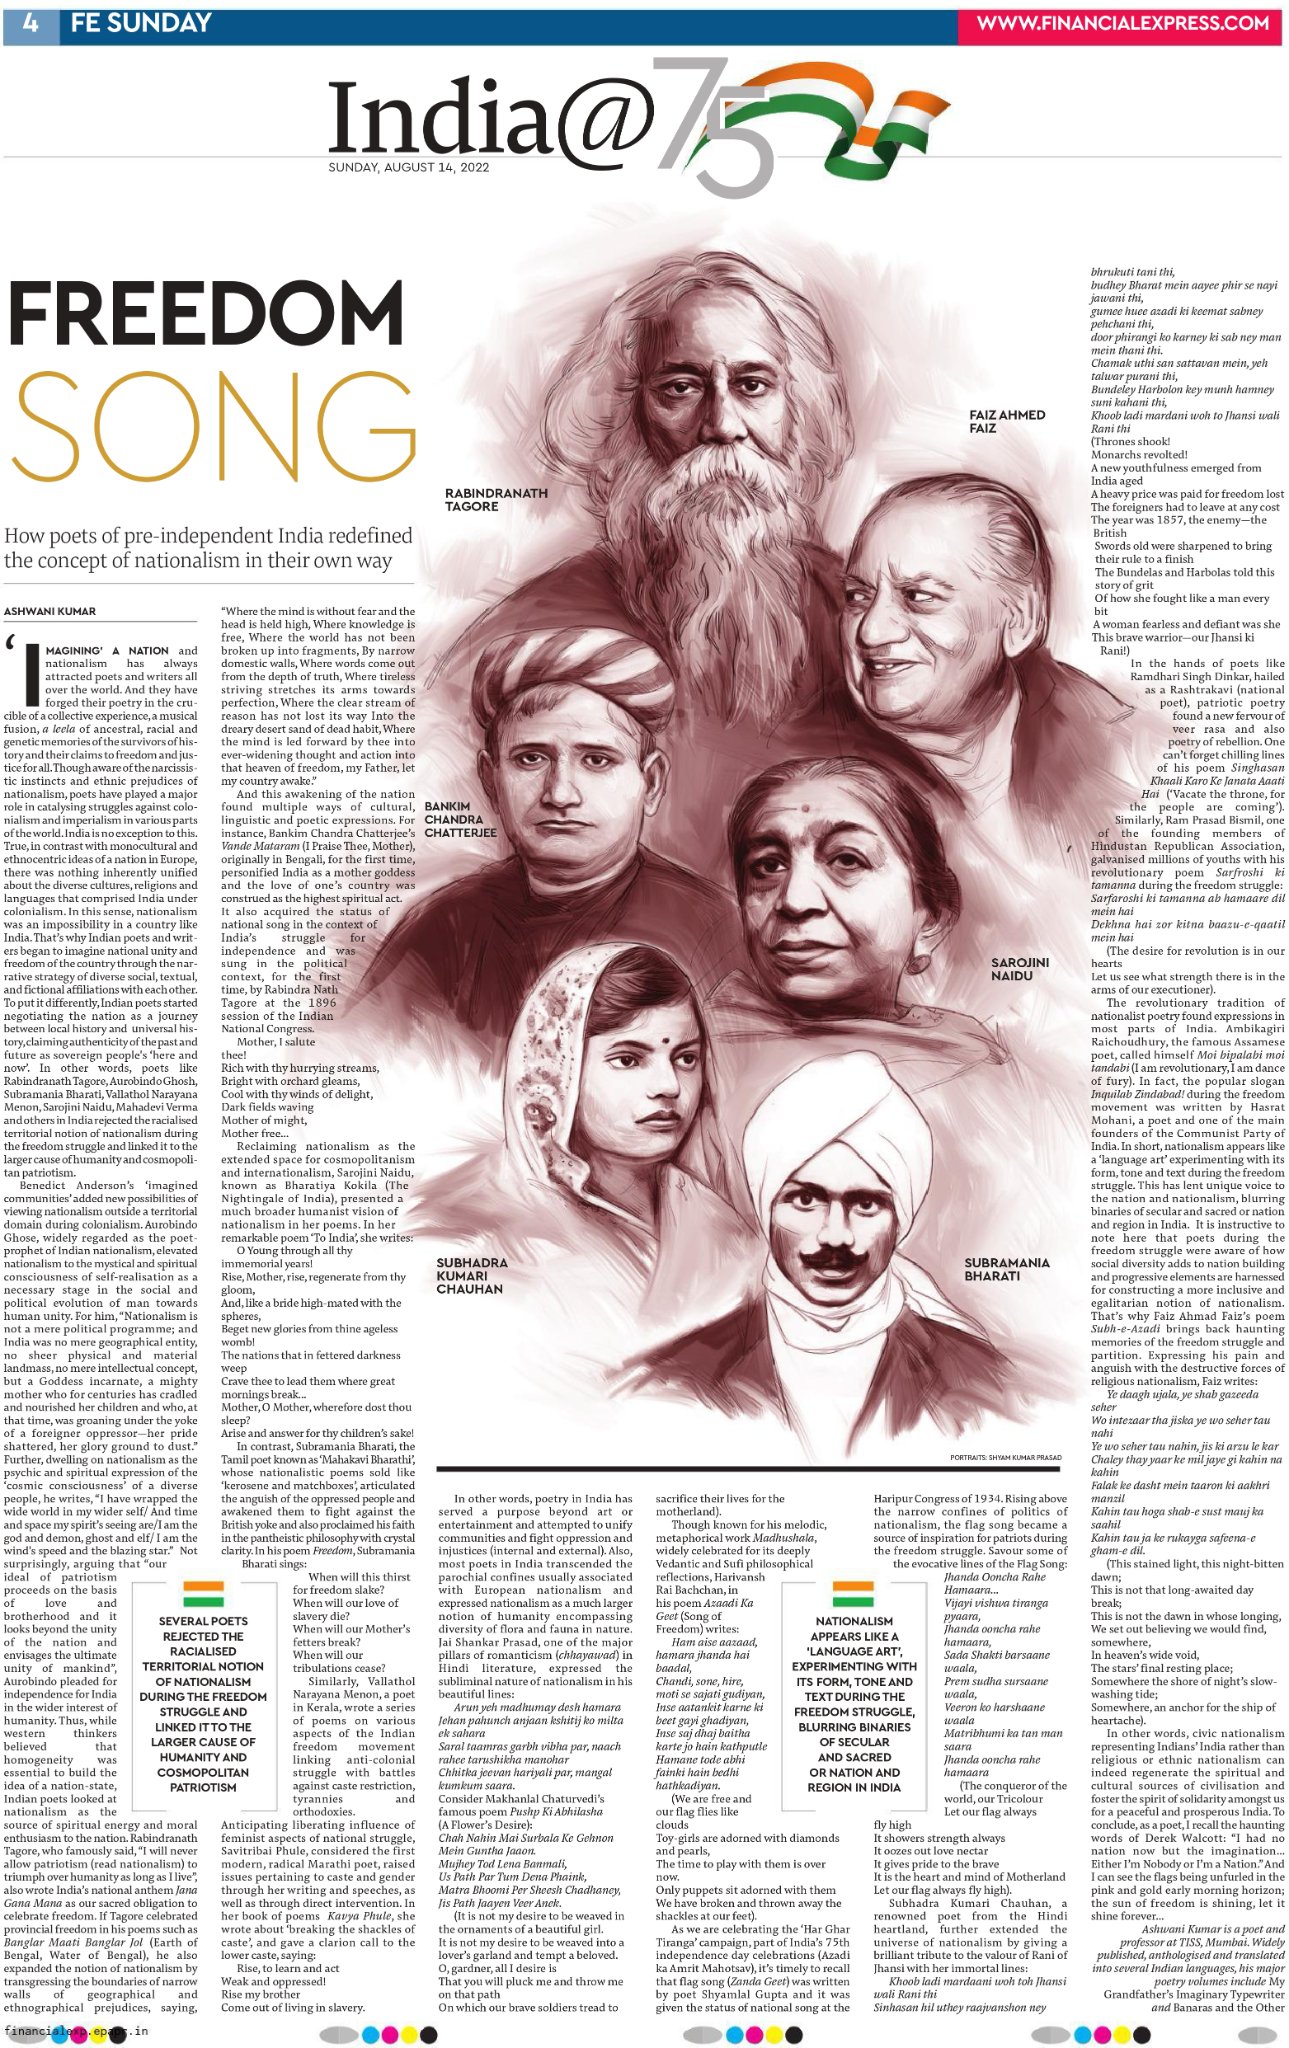 أشواني كومار يكتب عن أغاني الحرية